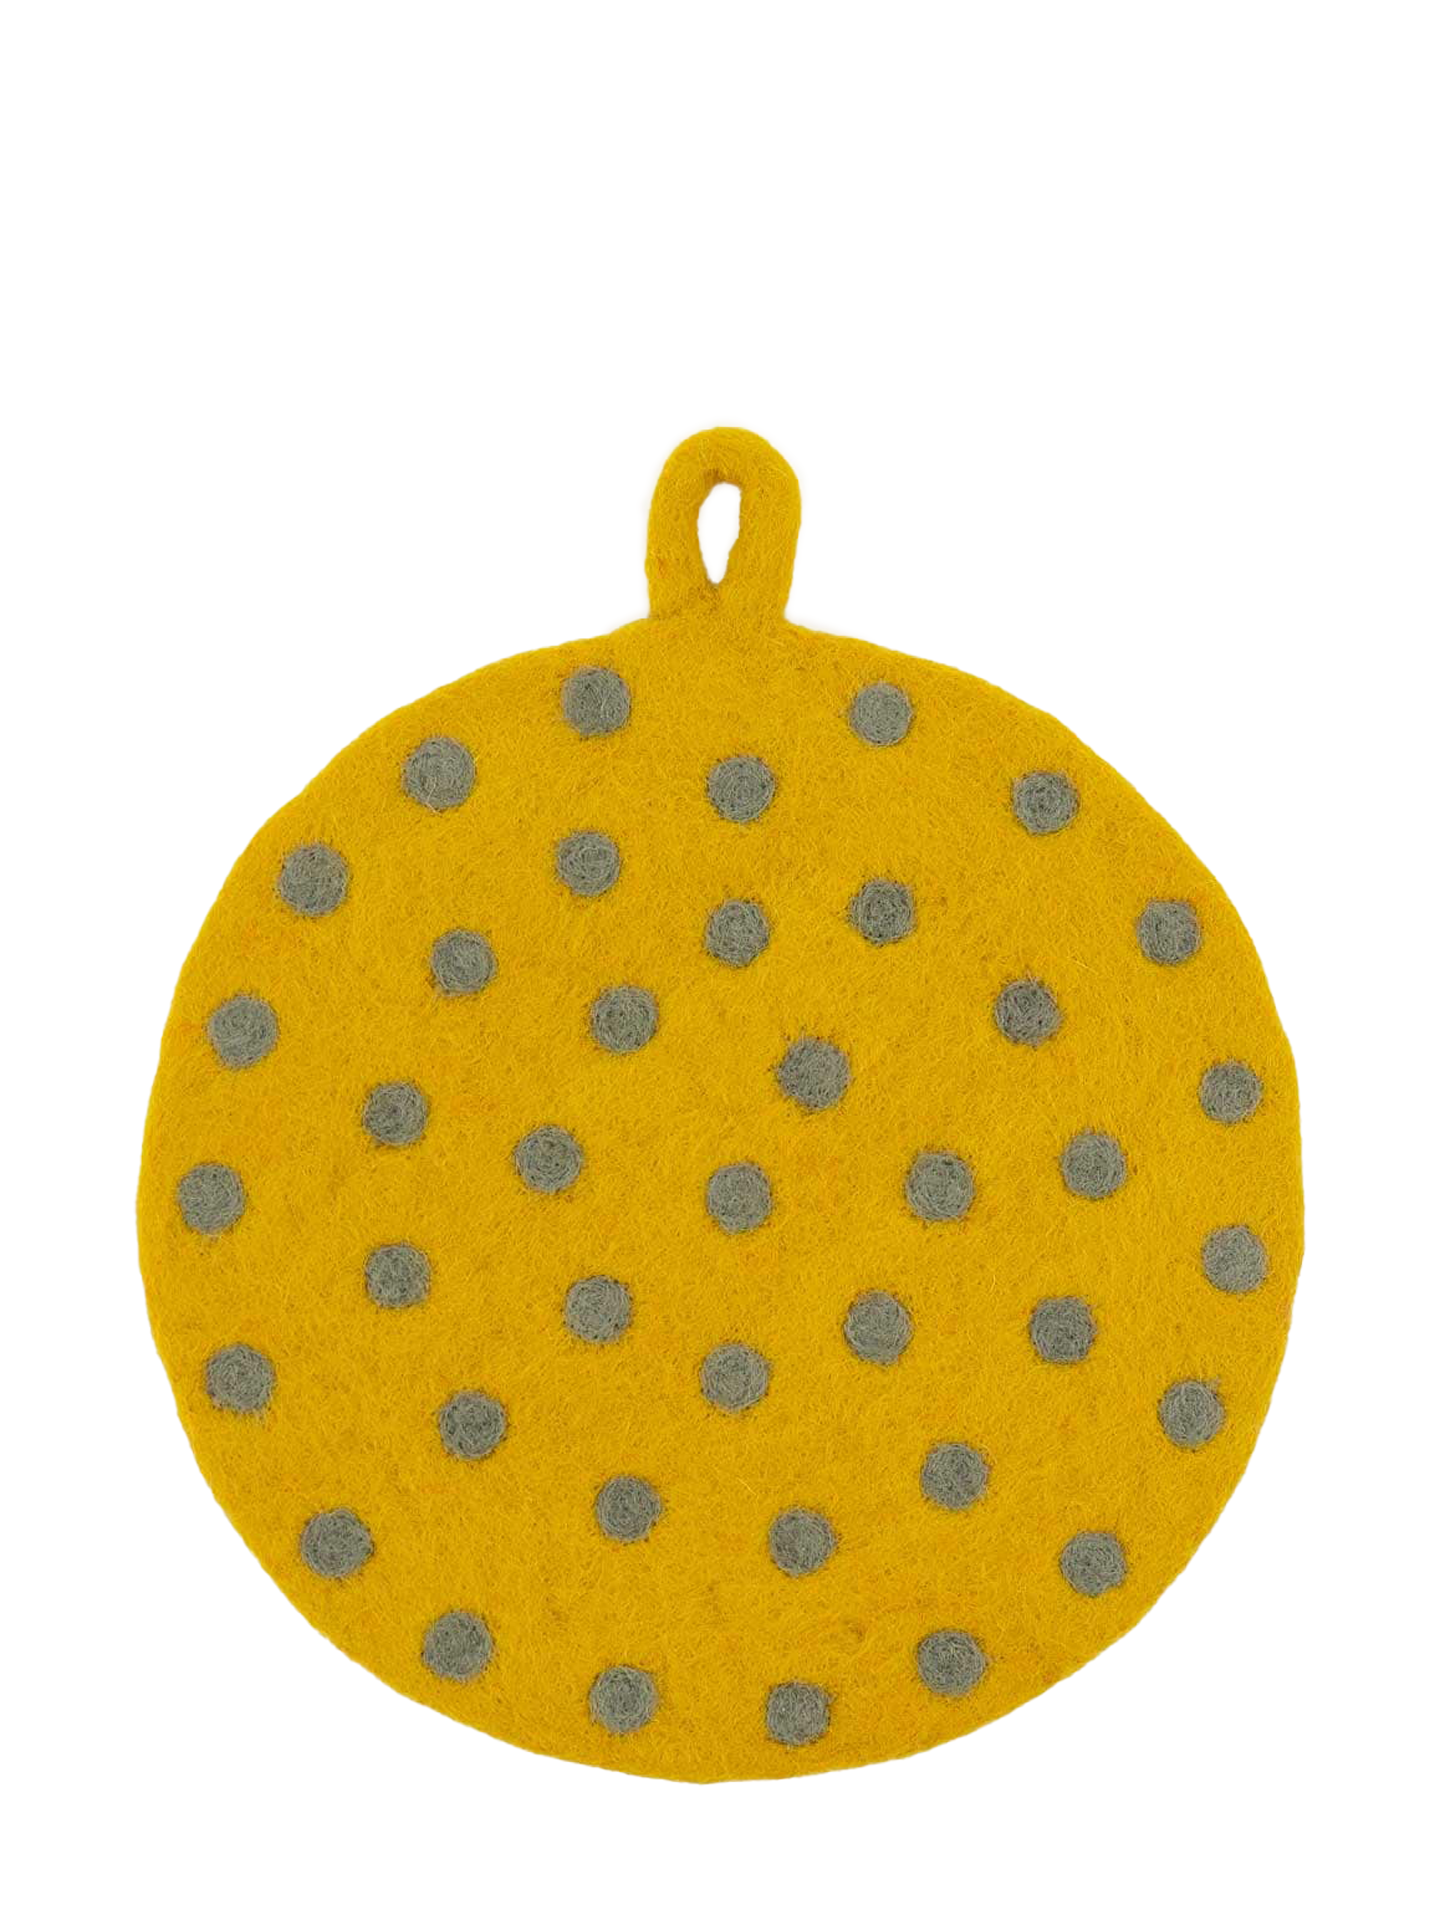 Felt dot potholder, yellow/grey